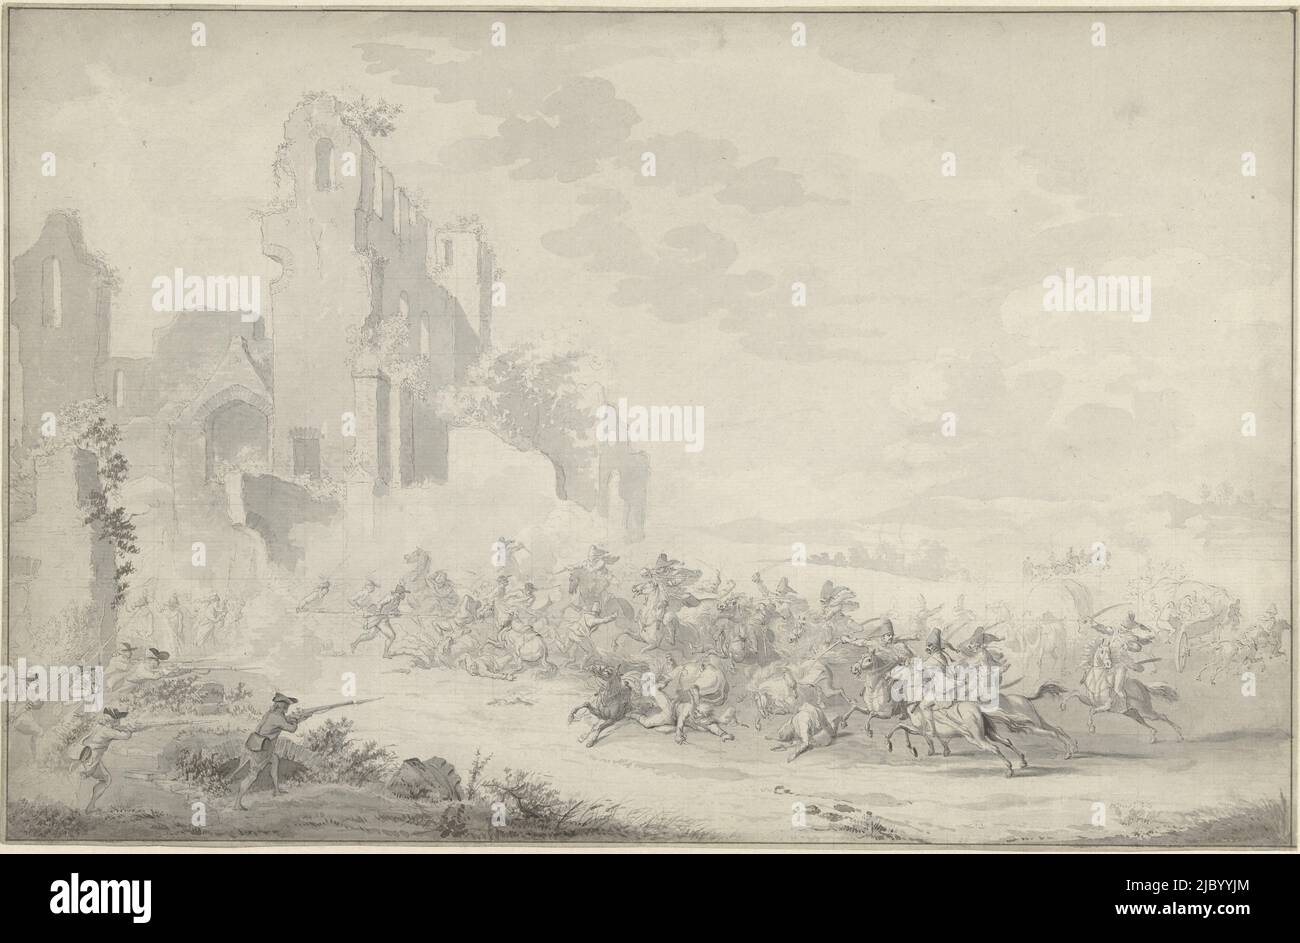 Fight between cavalry and footmen, Dirk Langendijk, 1780, Design for a print., draughtsman: Dirk Langendijk, 1780, paper, pen, brush, h 309 mm × w 475 mm Stock Photo